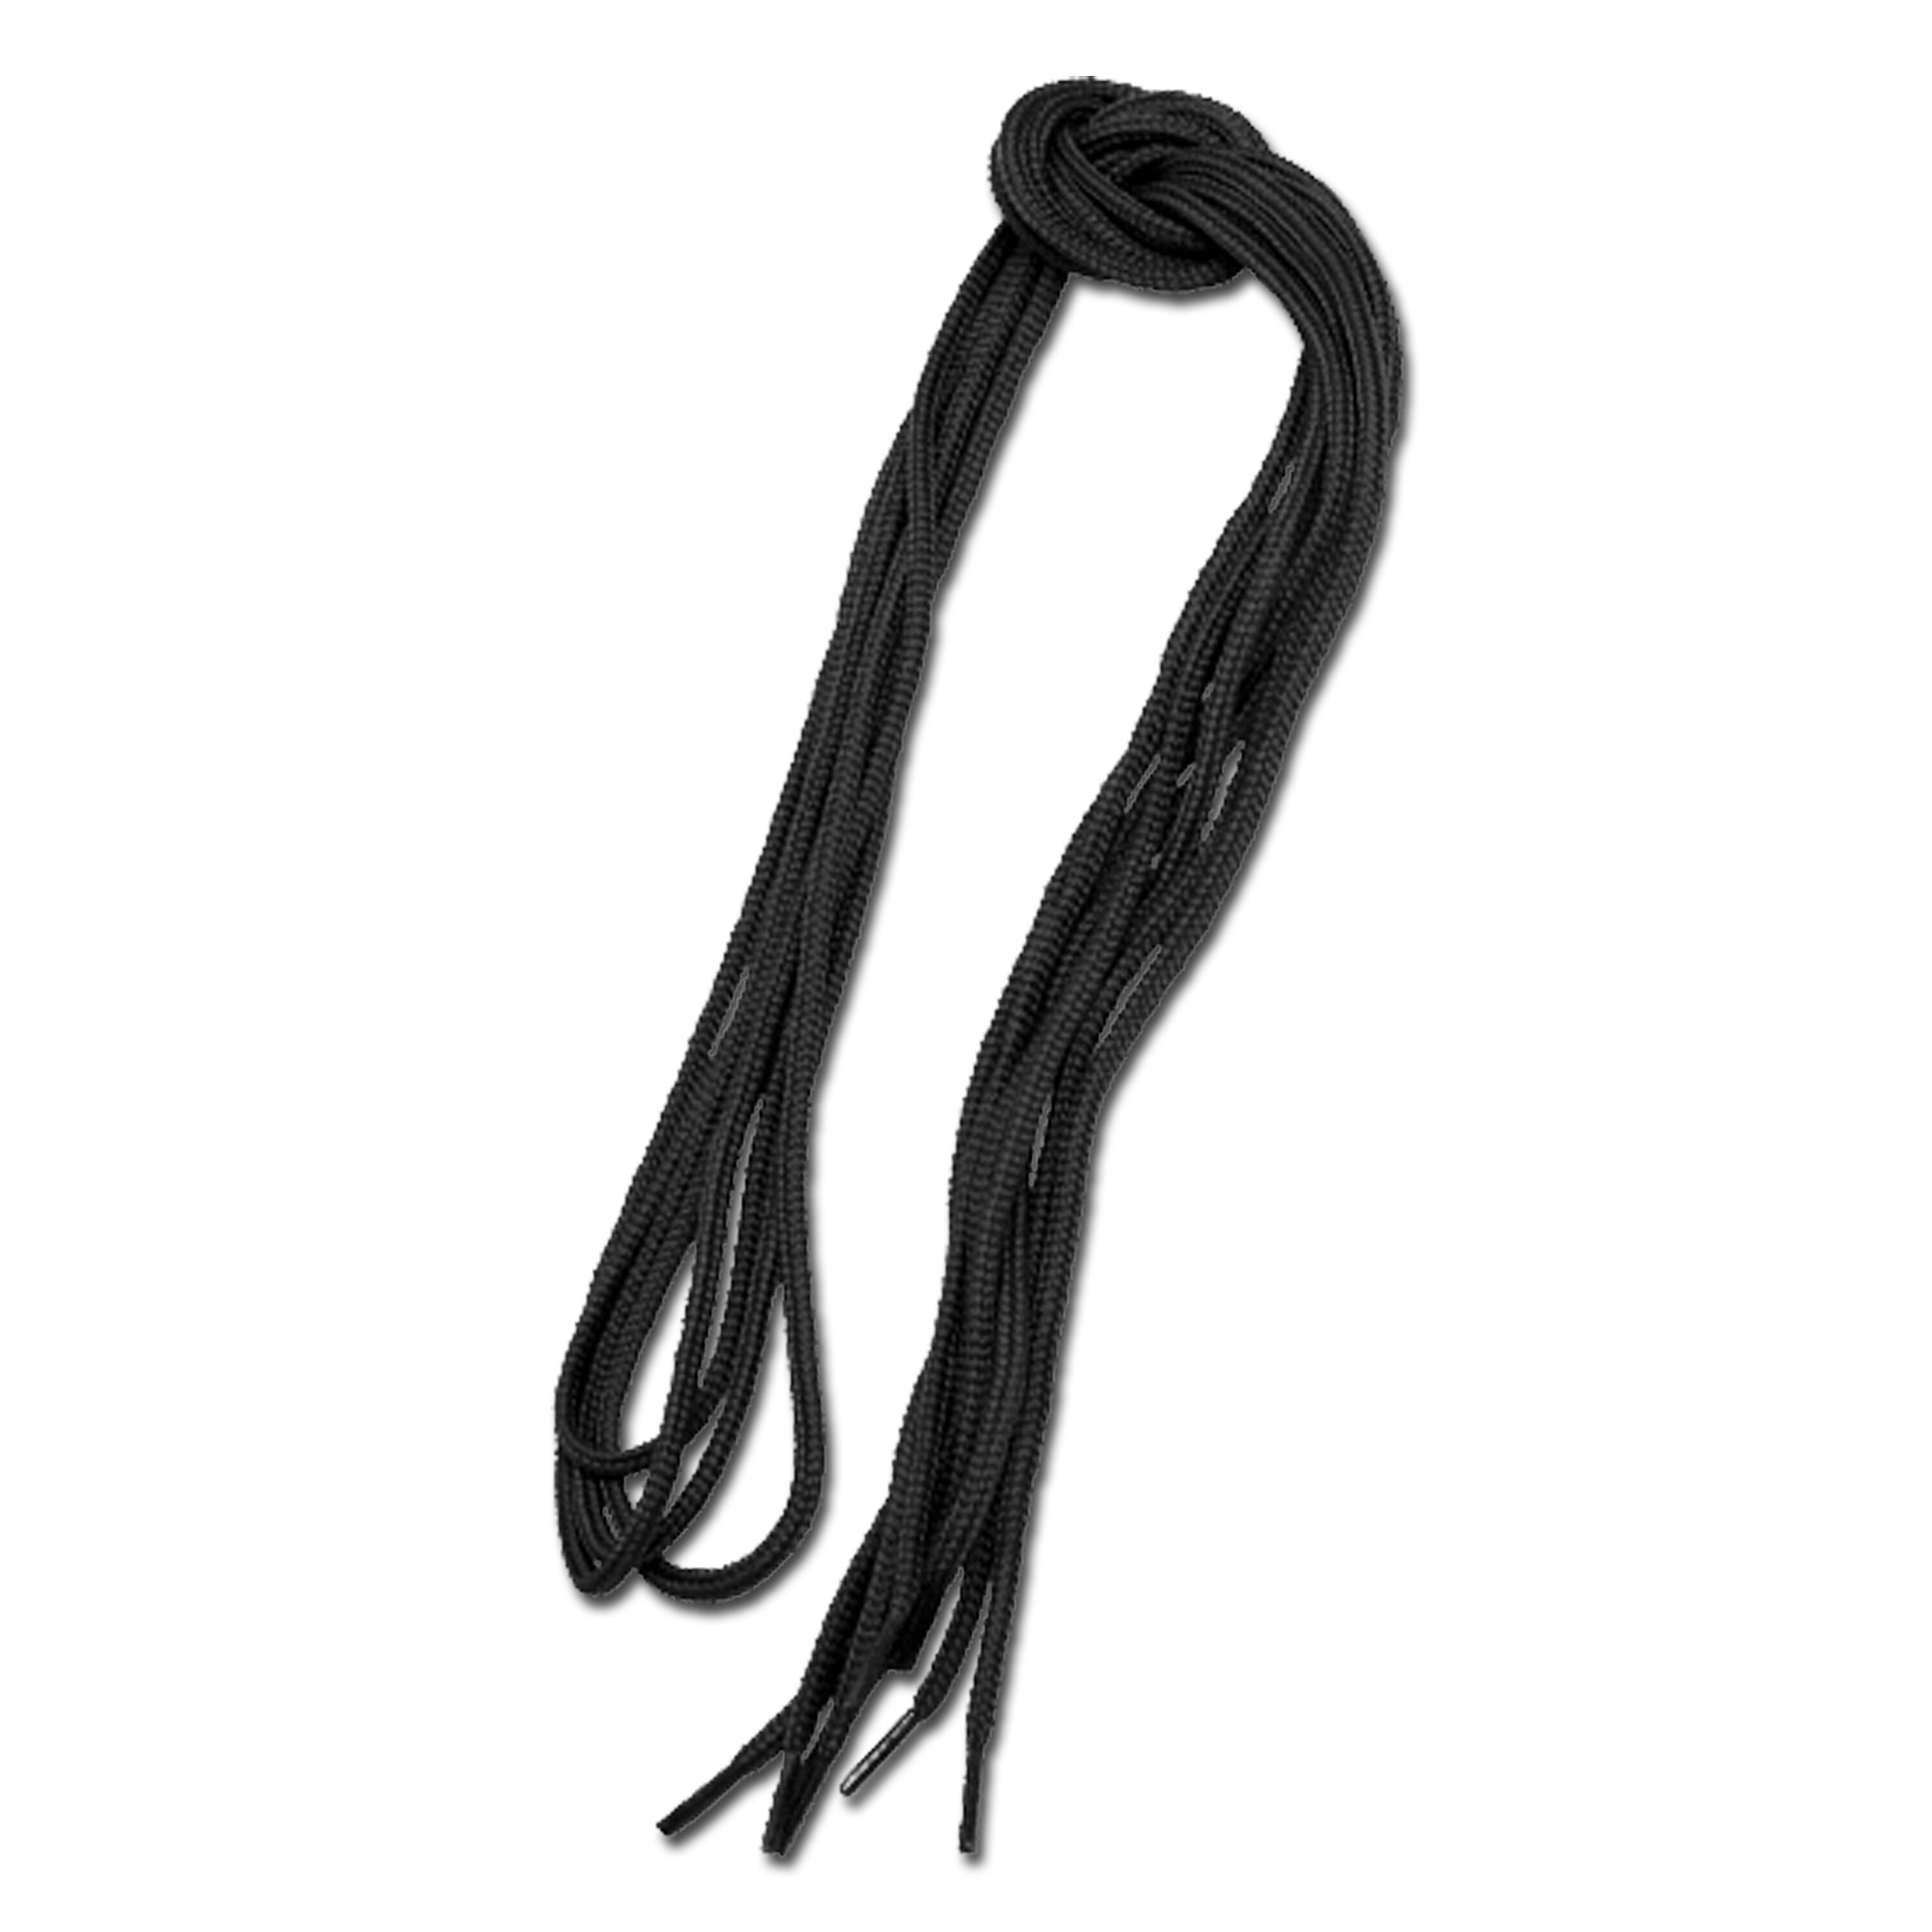 Cordones negros 180 cm | Cordones negros 180 cm | Cuidado del calzado